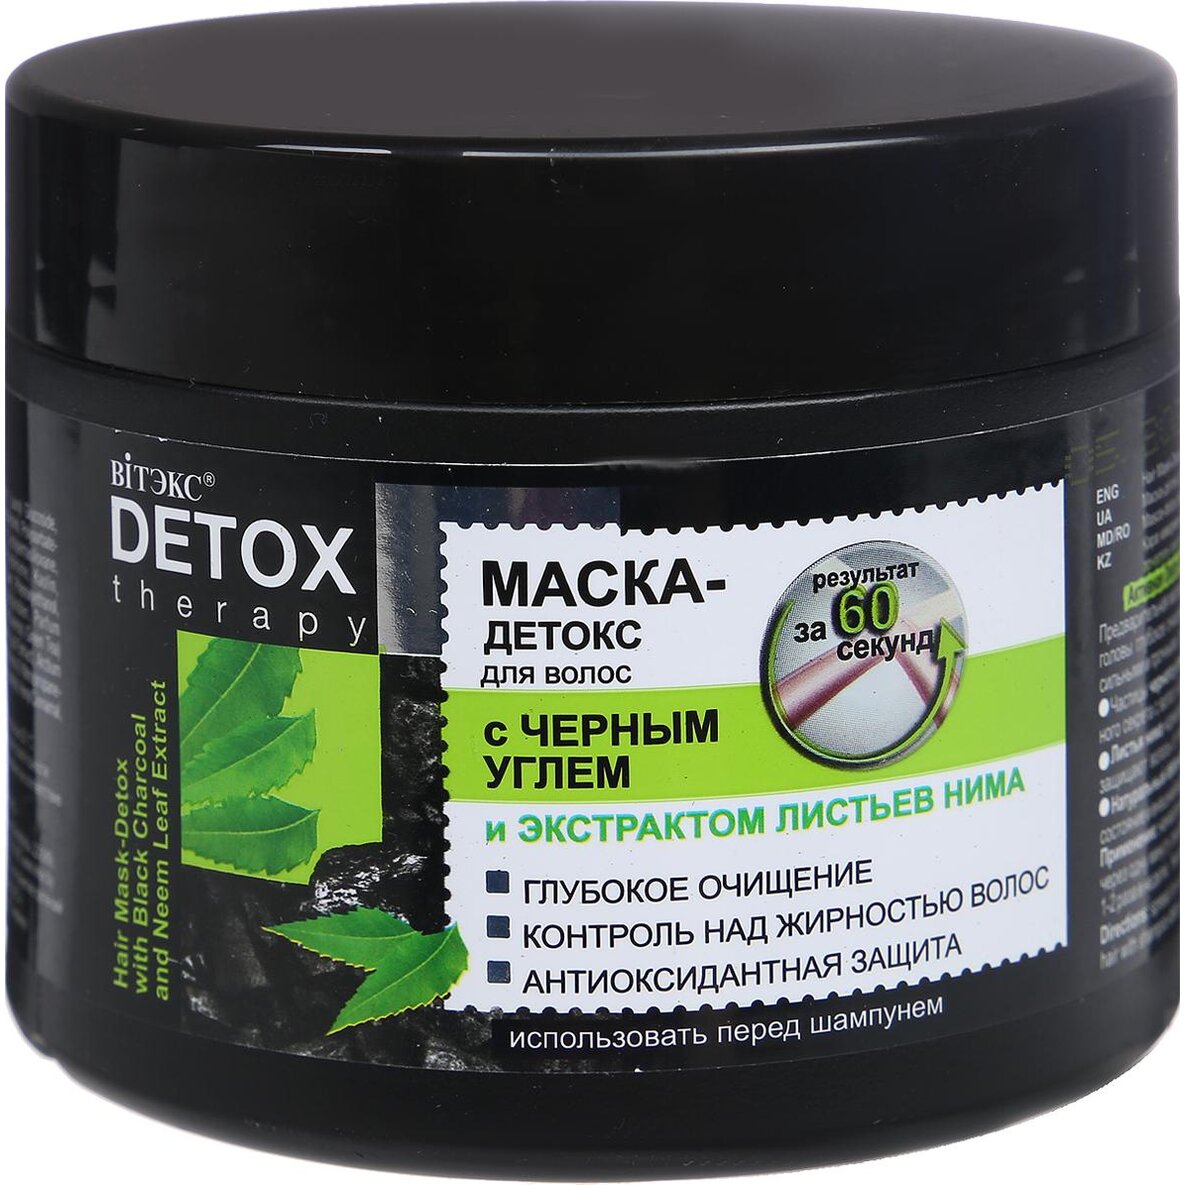 Витэкс detox therapy маска-детокс для волос 300мл с черным углем и экстрактом листьев нима